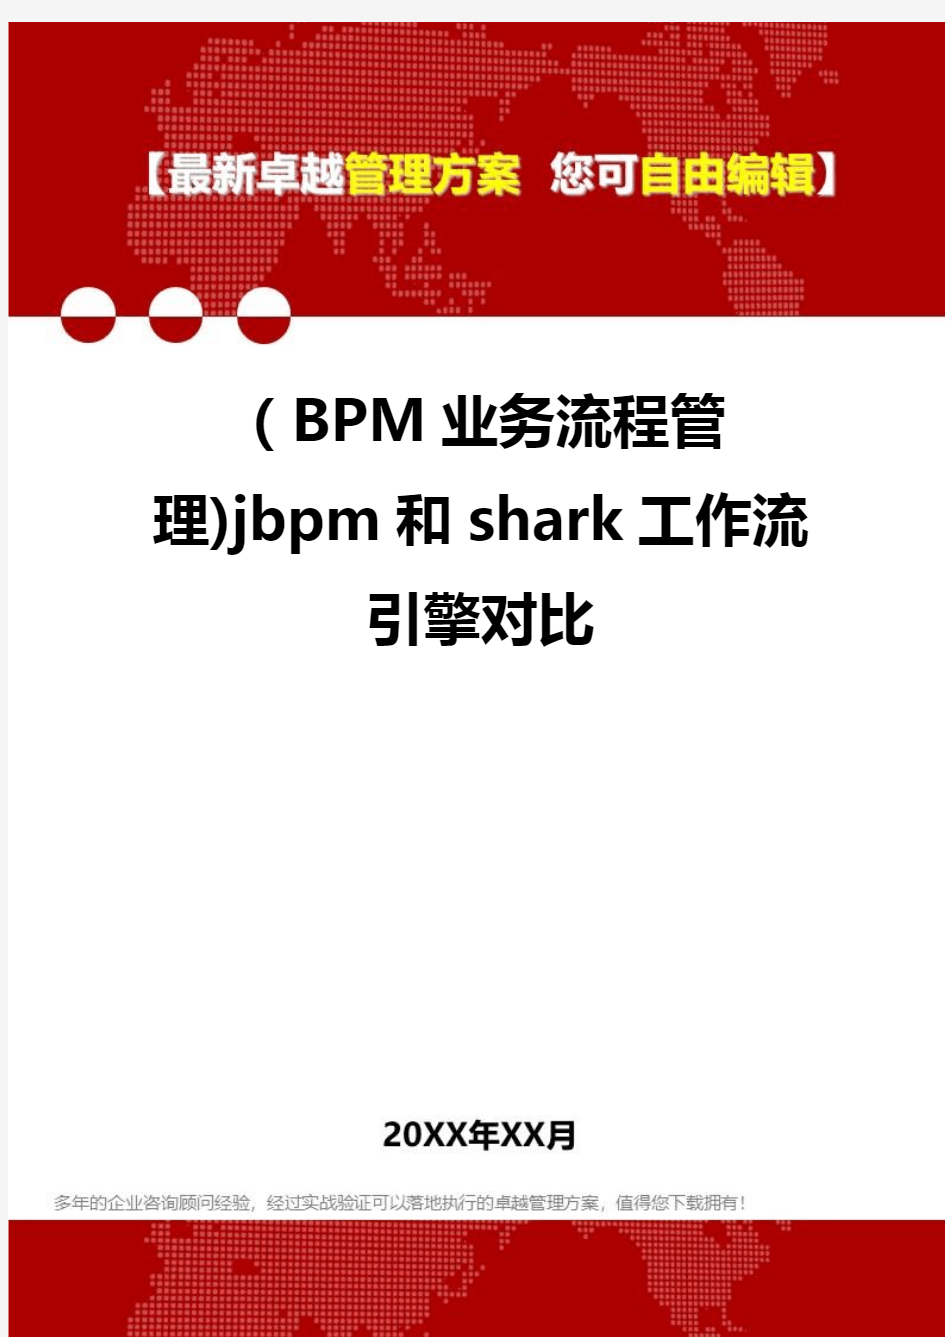 2020年(BPM业务流程管理)jbpm和shark工作流引擎对比